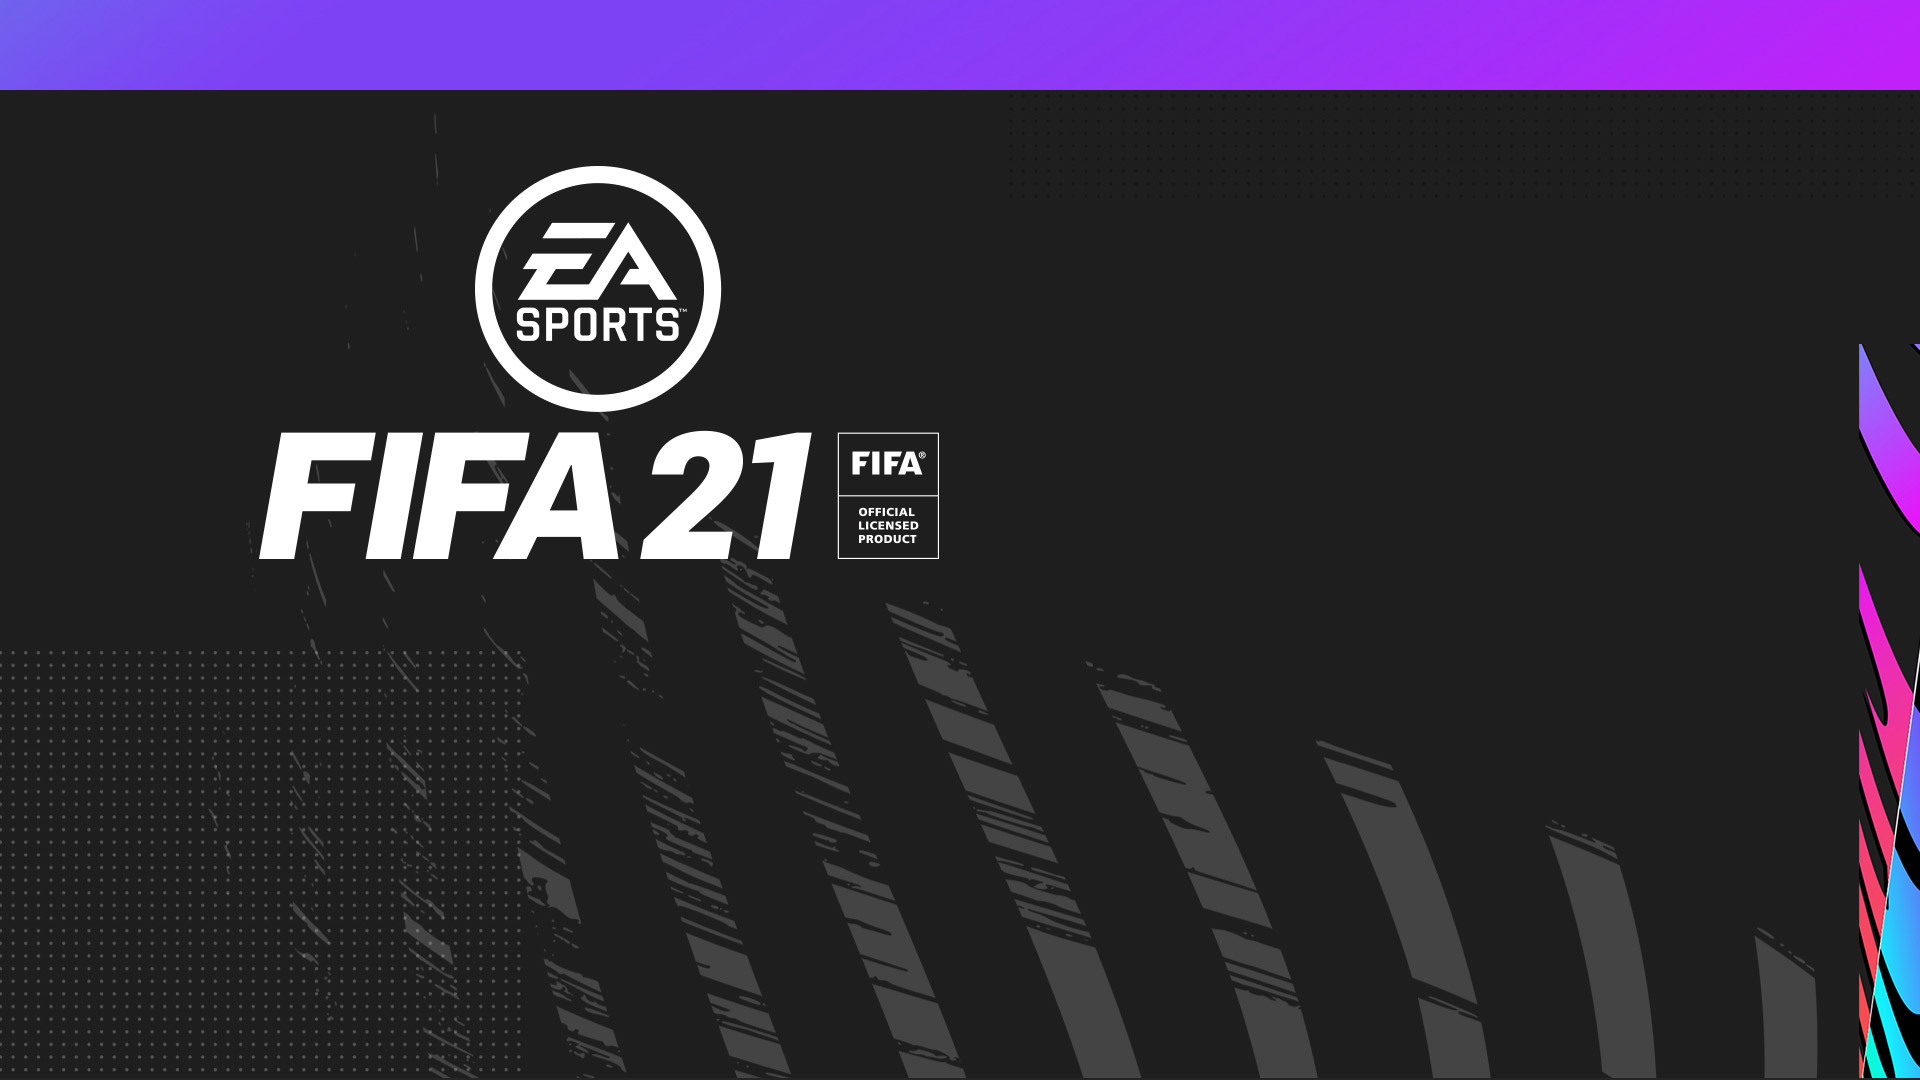 نسخه رایانه های شخصی بازی FIFA 21 بر پایه نسل هشت خواهد بود